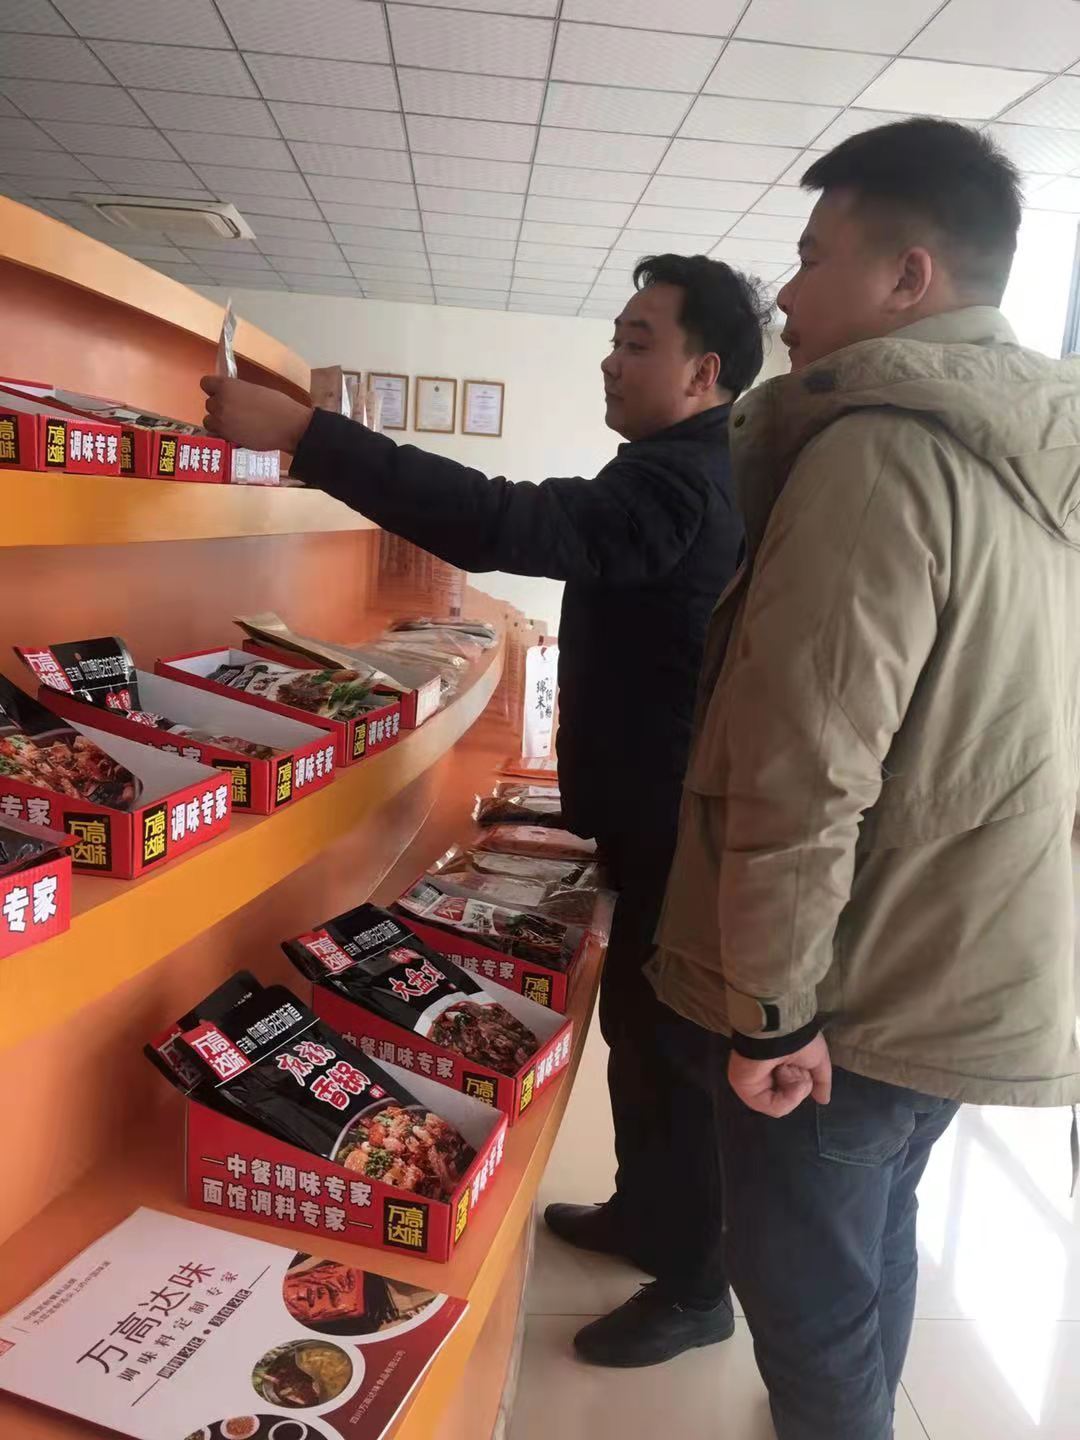 内蒙古社区团购电商企业负责人来公司考察并采购米粉等产品